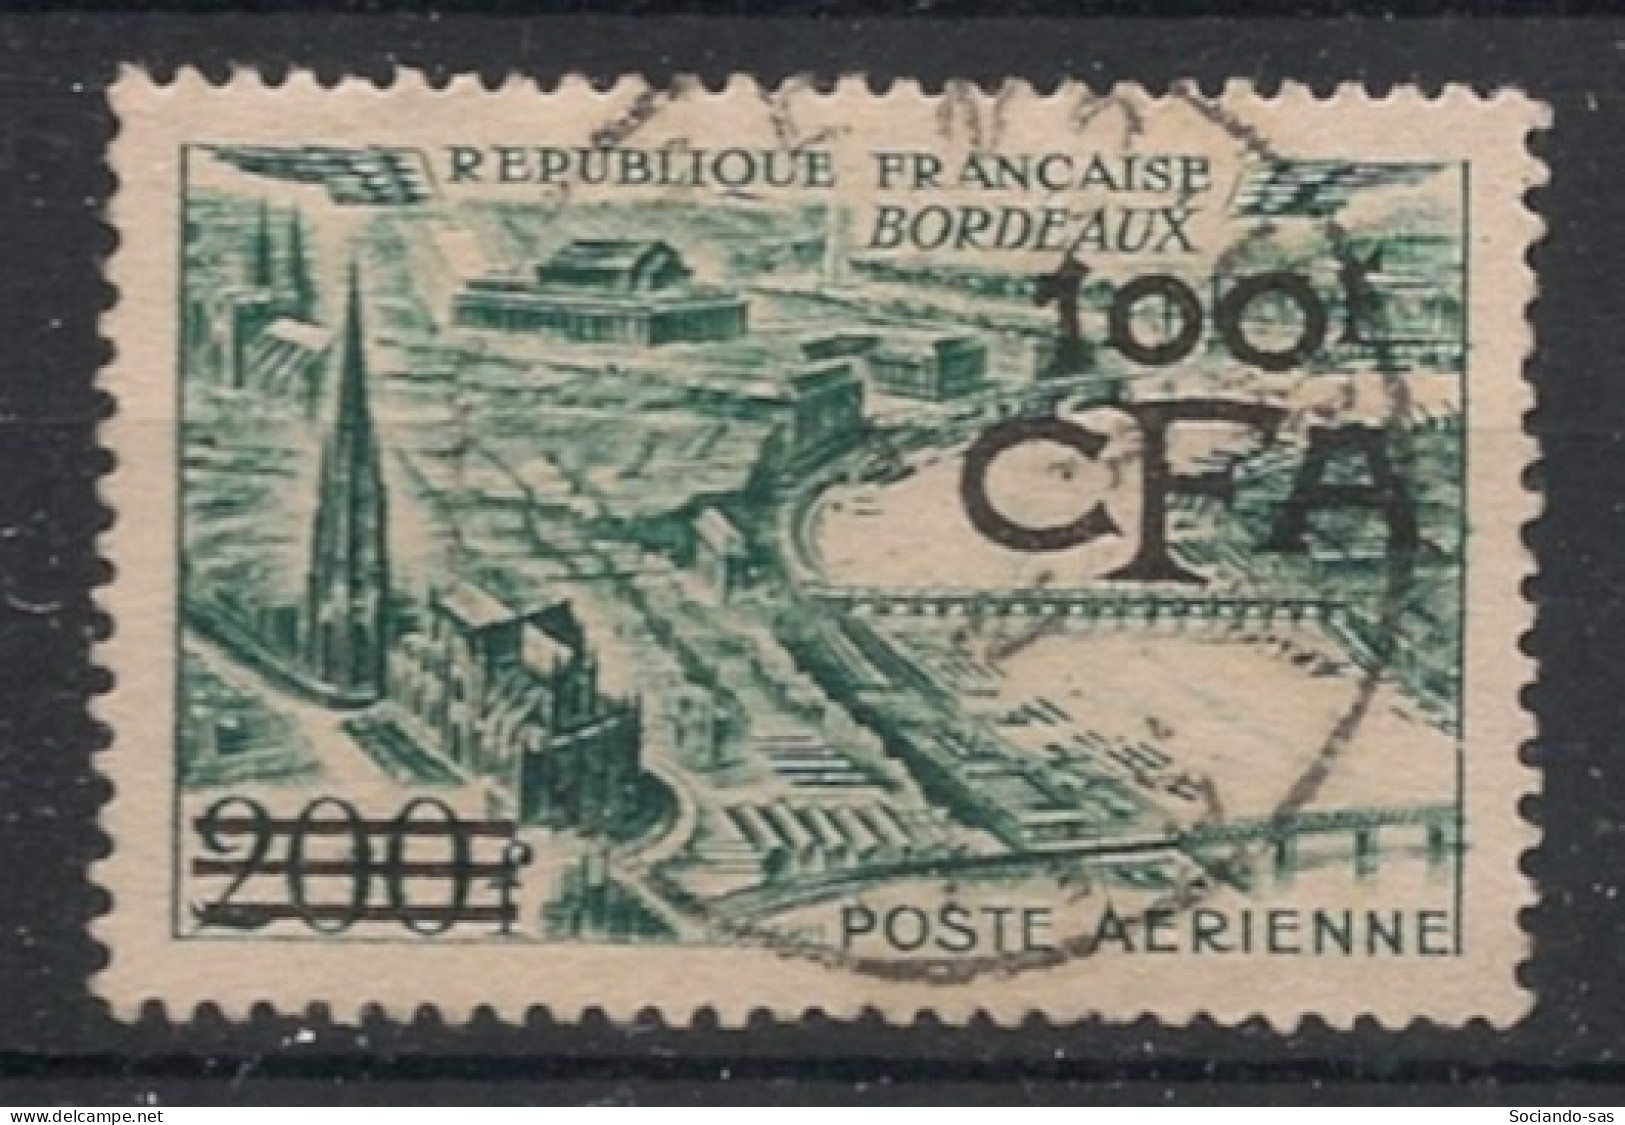 REUNION - 1951 - Poste Aérienne PA N°YT. 49 - Bordeaux 100f Sur 200f - Oblitéré / Used - Posta Aerea